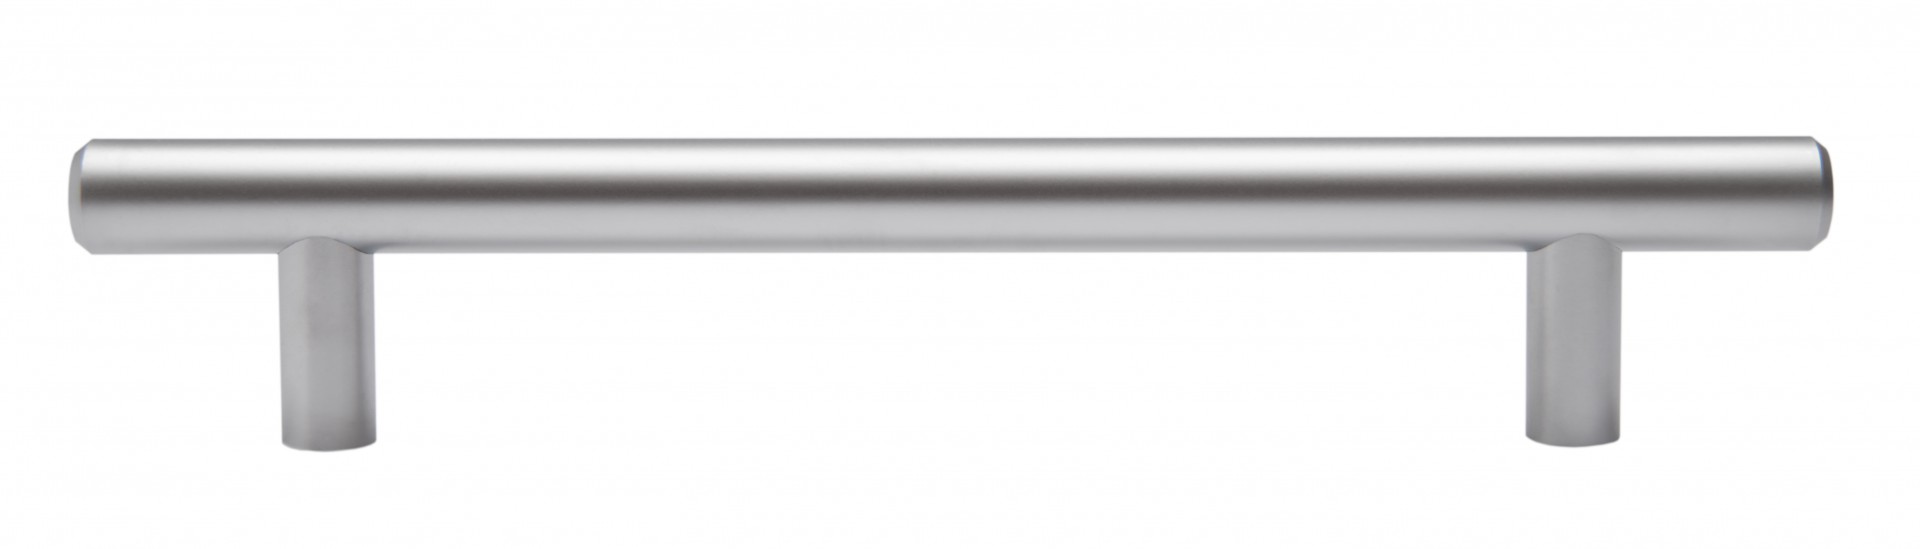 Ручка мебельная рейлинг 192мм сатин RR002SC.5/192 Boyard / 719739-4 / оптом и в розницу / мебельная фурнитура "ЛАВР"